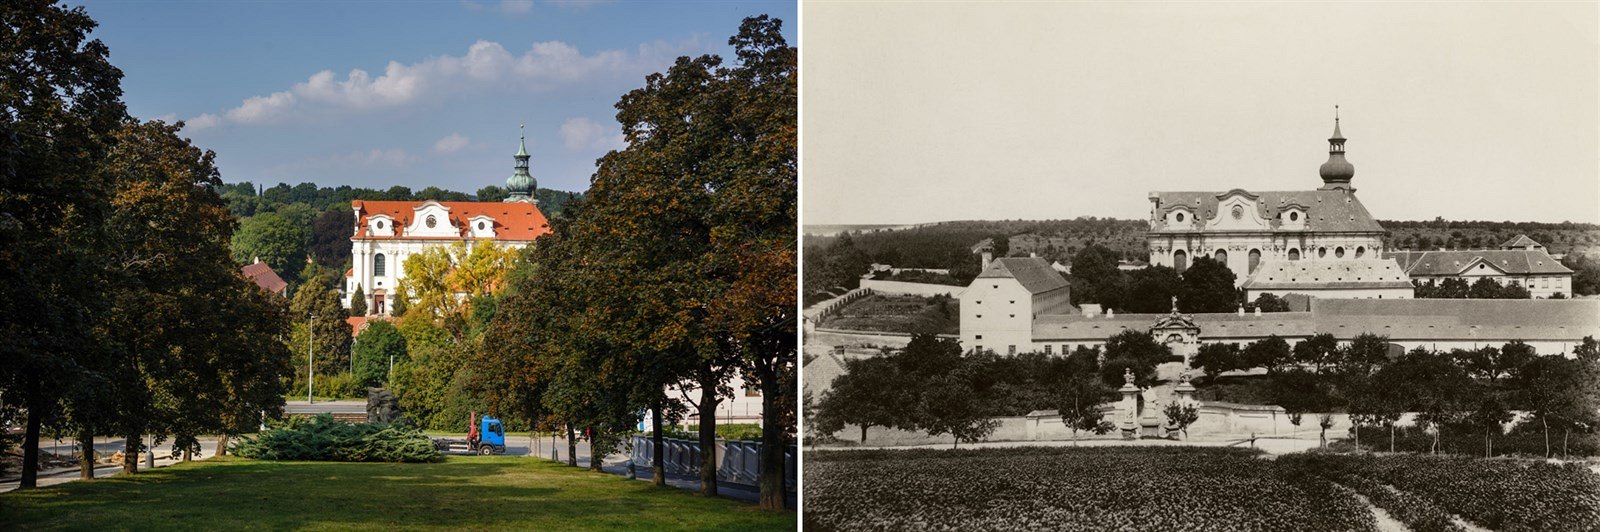 Bevnovský kláter v roce 1893 a dnes